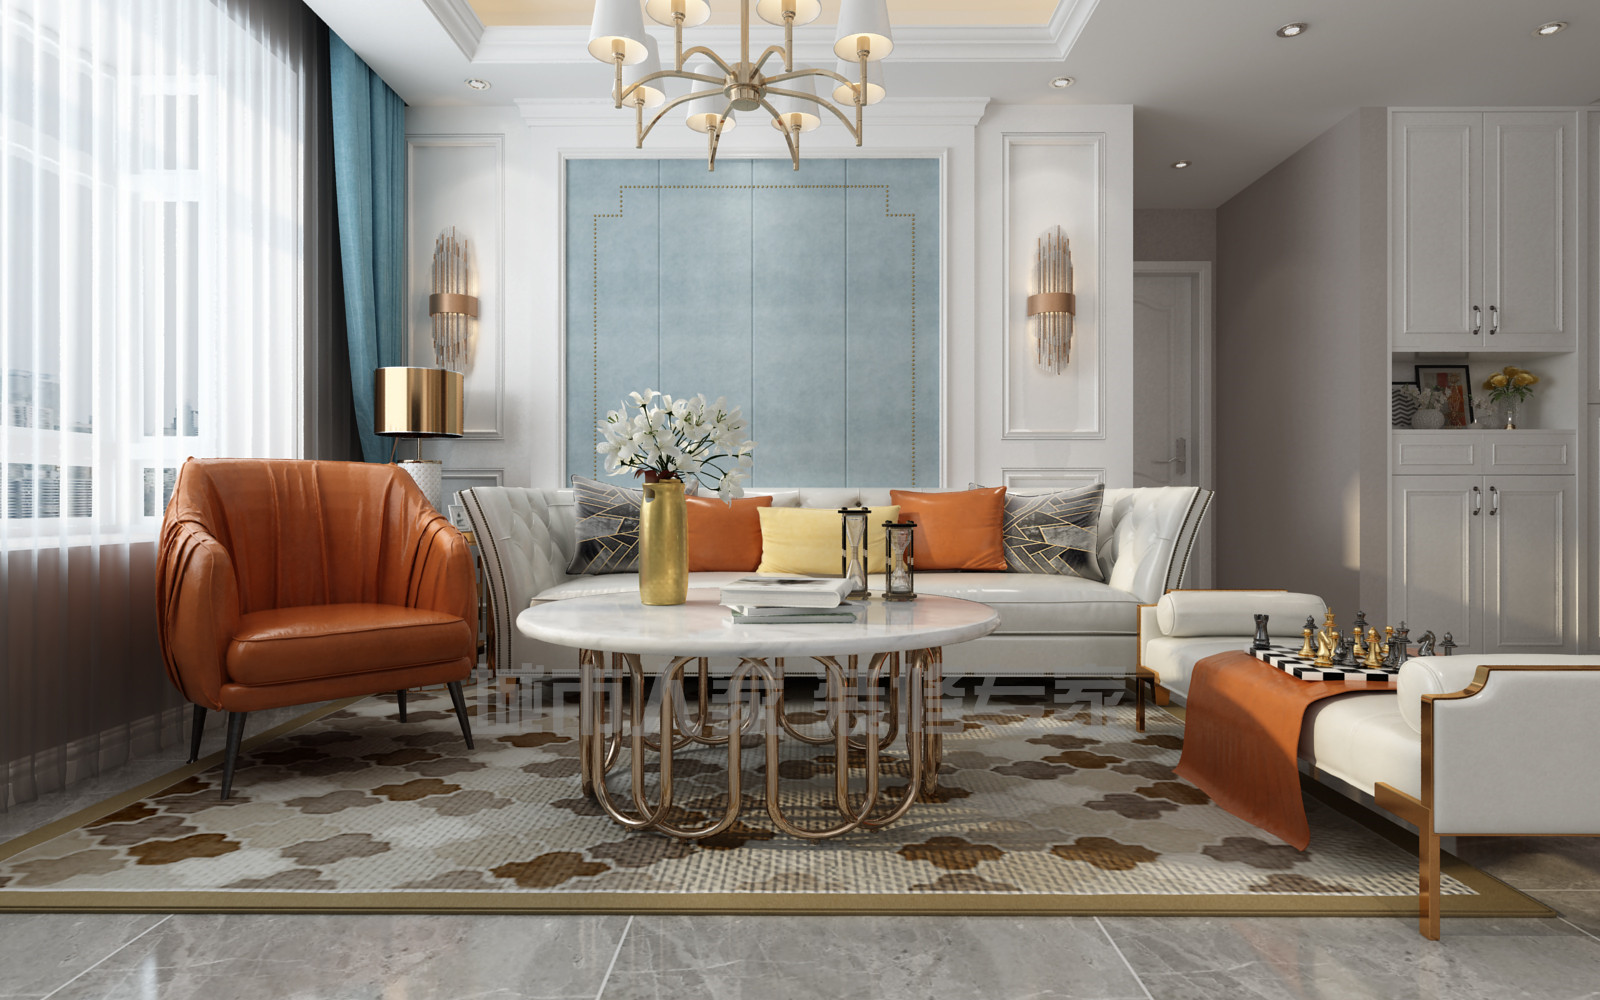 94㎡三居室现代欧式风格客厅沙发墙装潢效果图